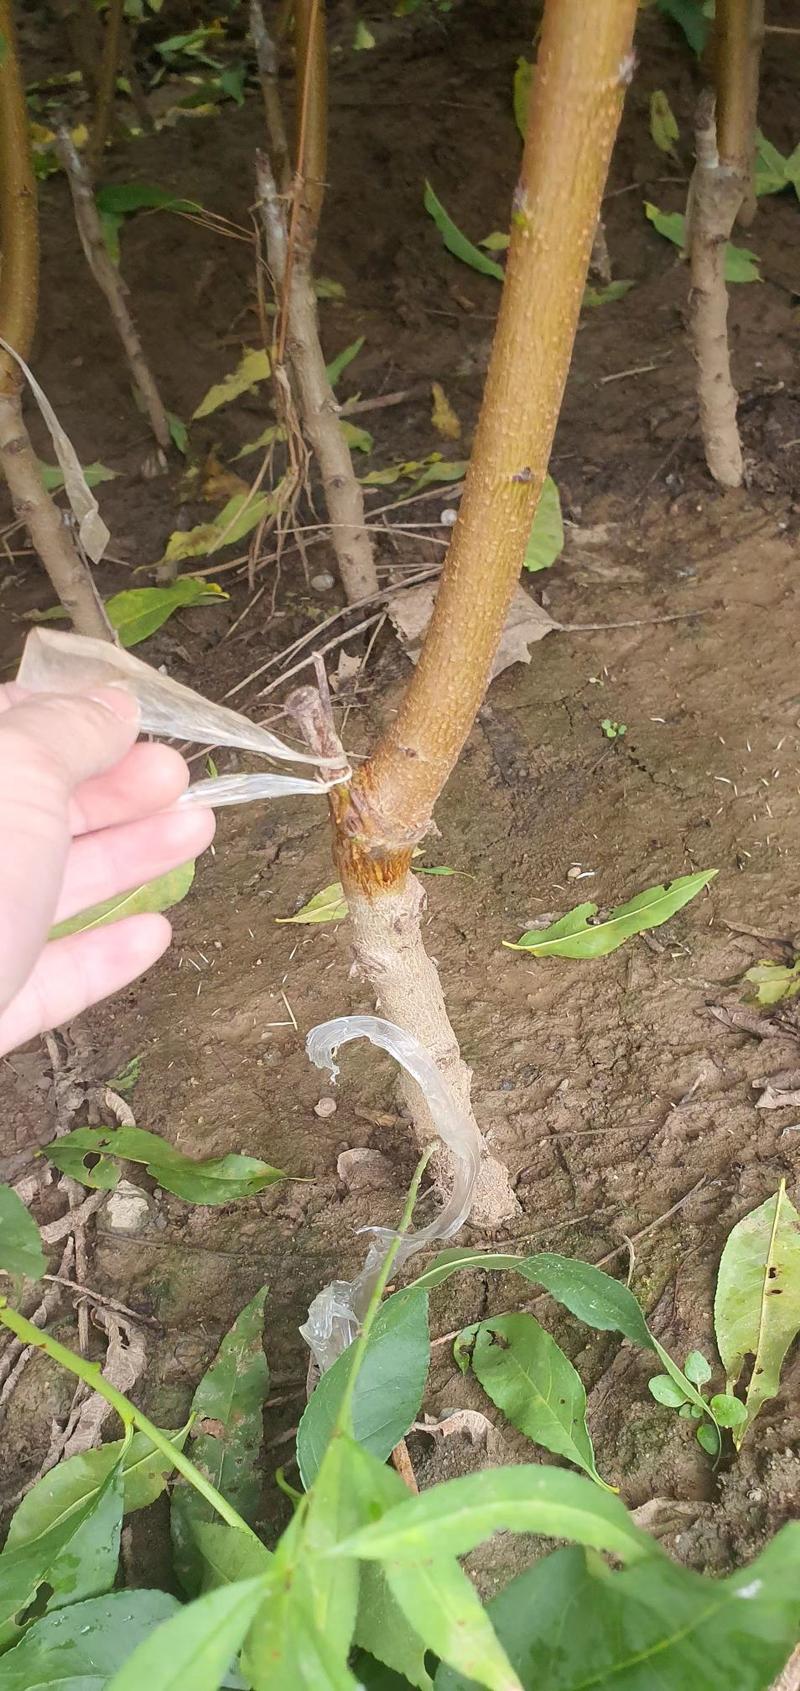 胭脂红桃苗品种纯正根系发达现挖现发保湿发货